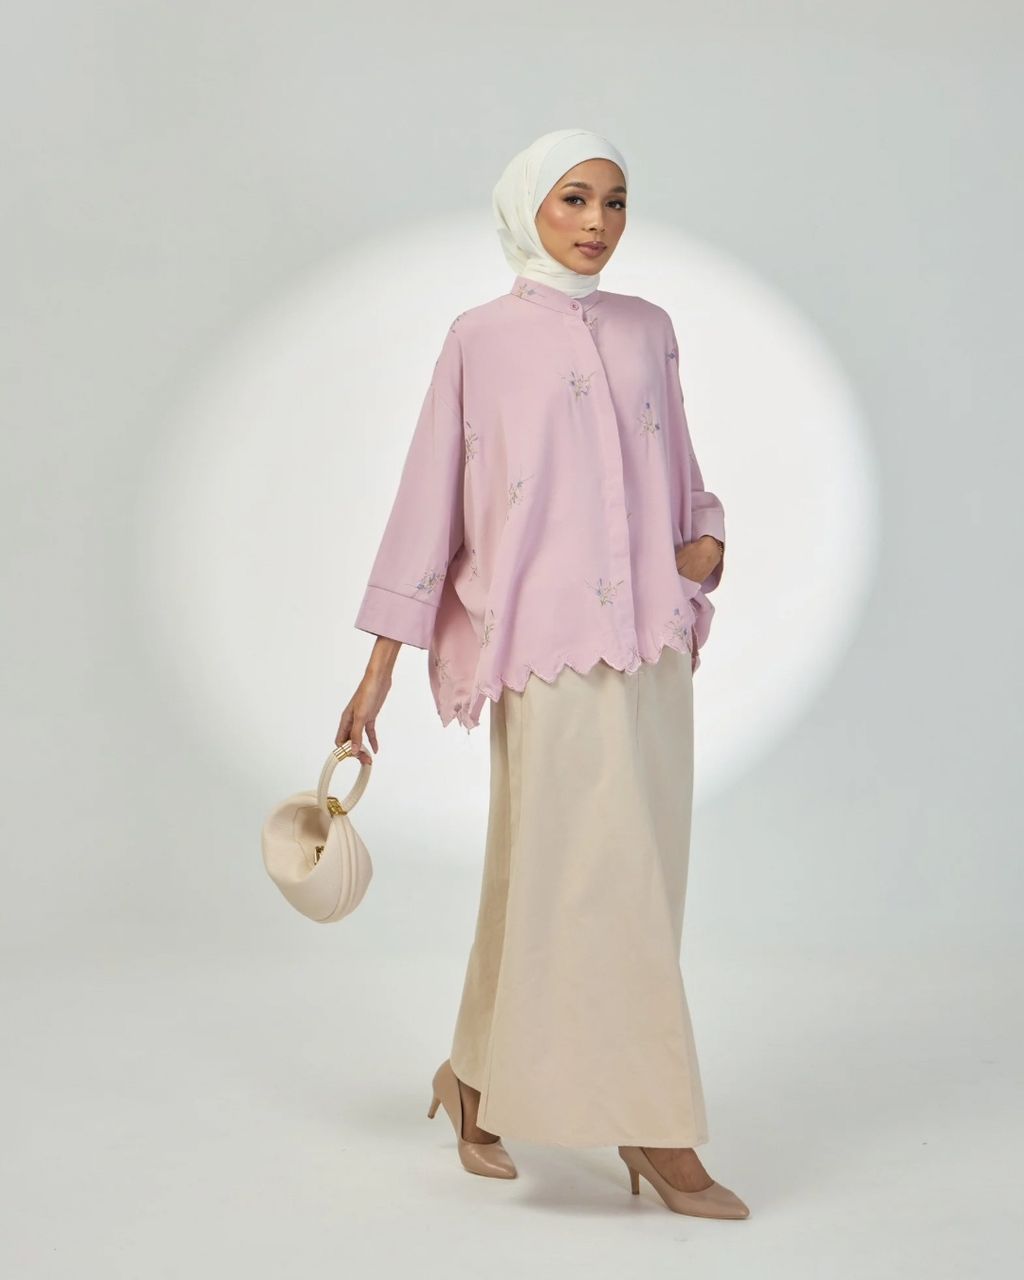 haura-wear-willy-blouse-lengan panjang-kemeja labuh-baju labuh-tunic-kaftan-midi-dress-blouse-shirt-long-sleeve-baju-muslimah-baju-perempuan-shirt-blouse-baju (15)